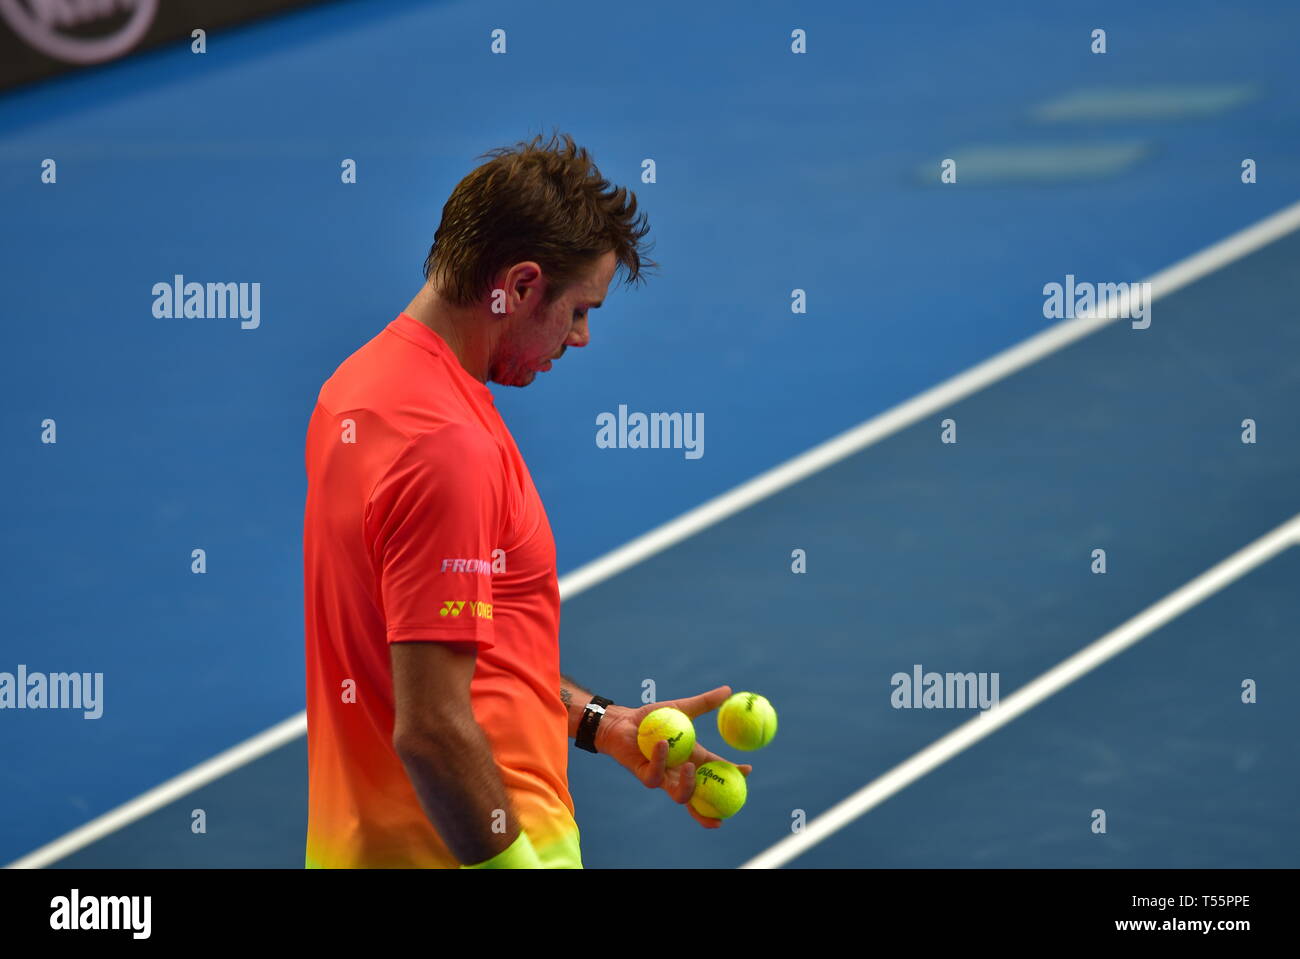 Stan Wawrinka, un tennista professionista svizzero, ha giocato all'Australian Open 2016 a Melbourne, Australia Foto Stock